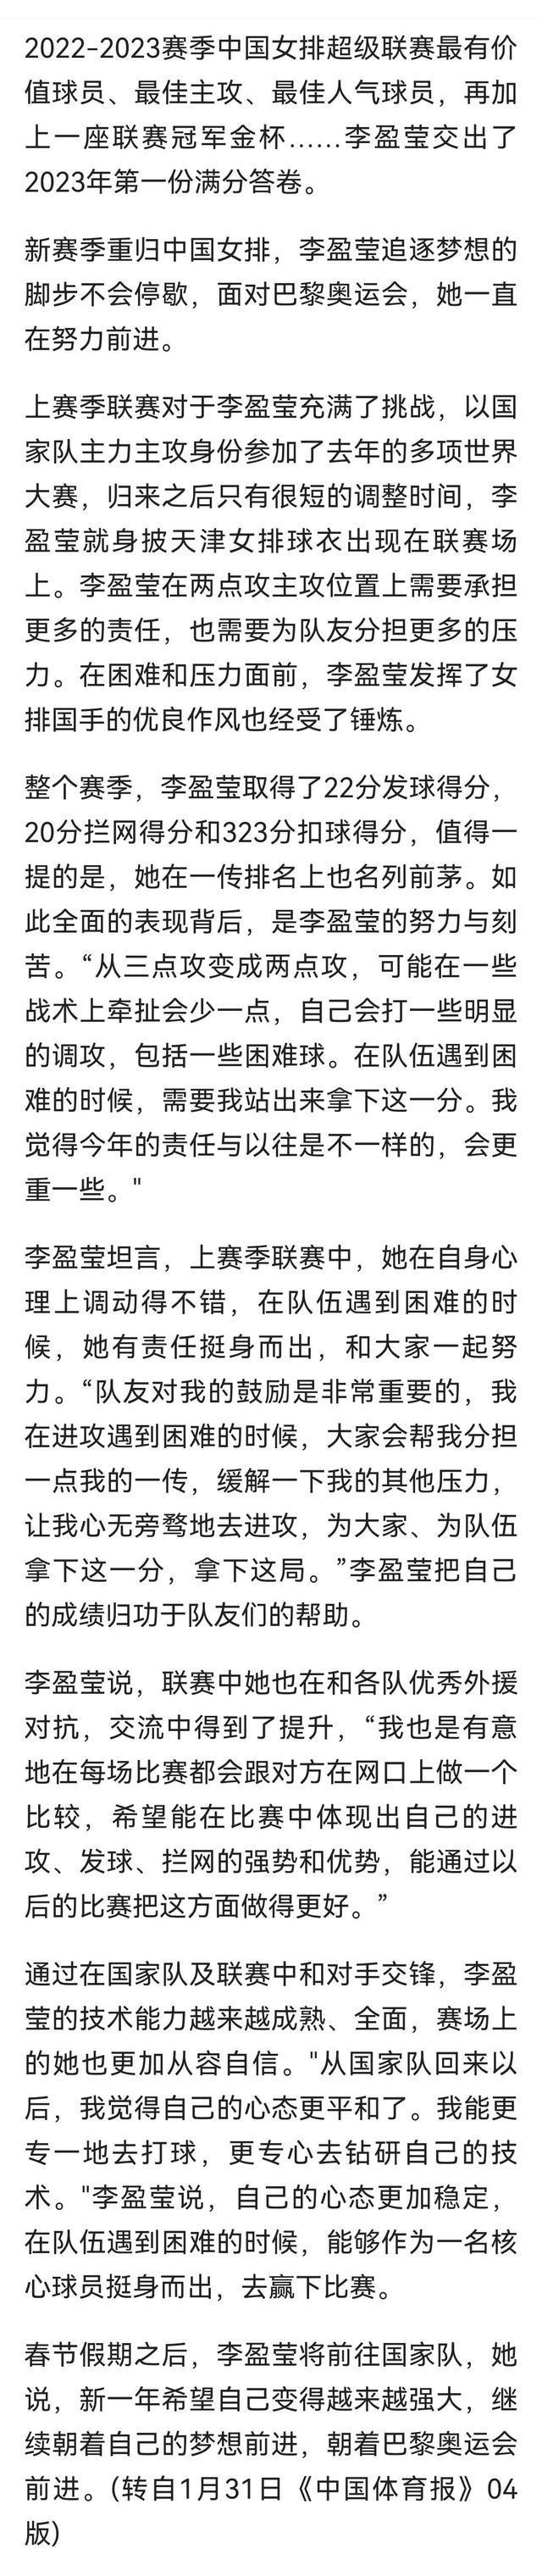 国家体育总局官网转载中国体育报文章：李盈莹向着梦想不断前进(1)